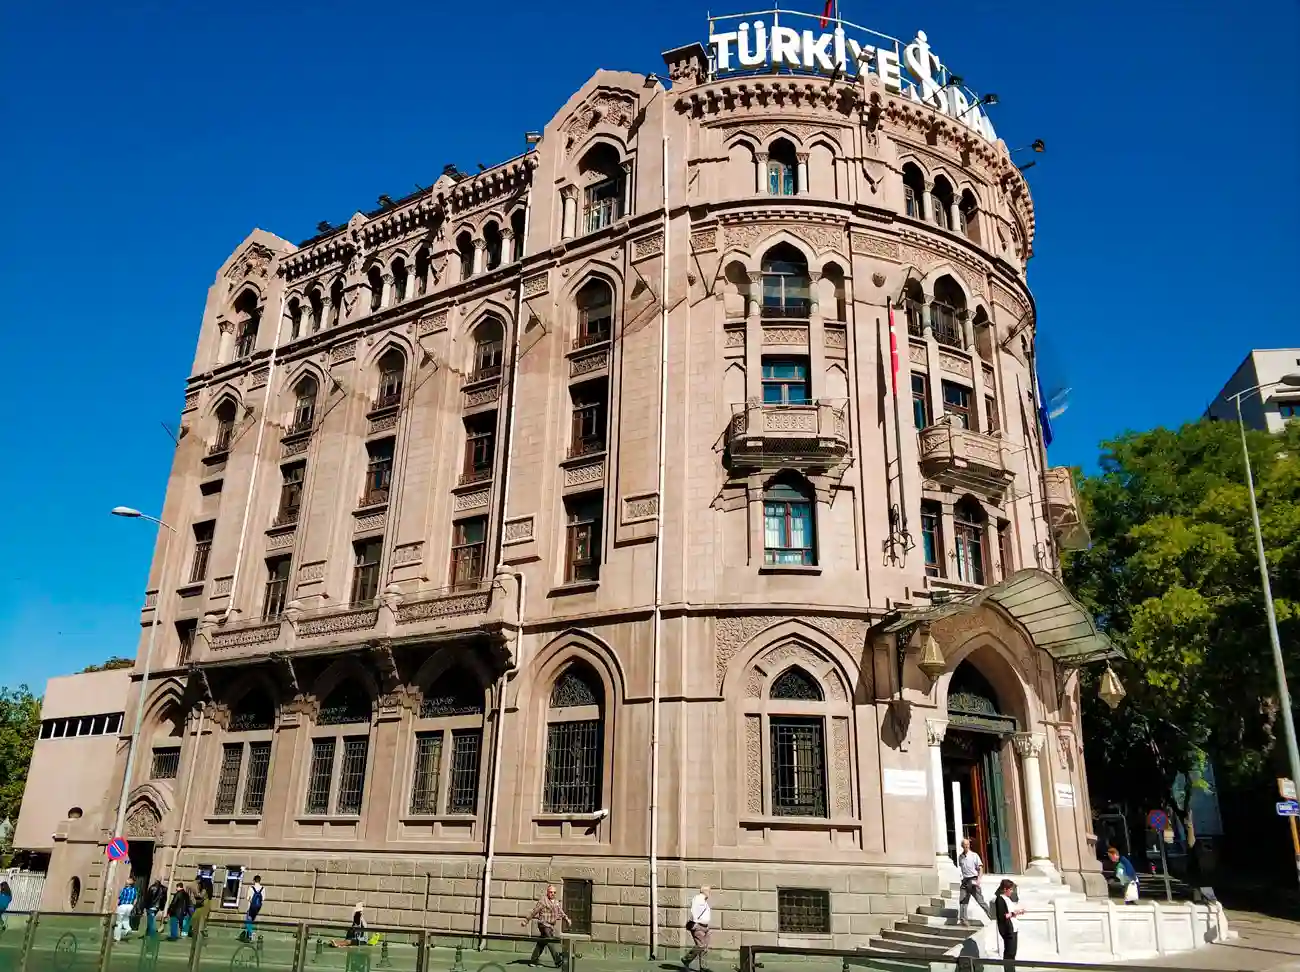 Türkiye İş Bankası